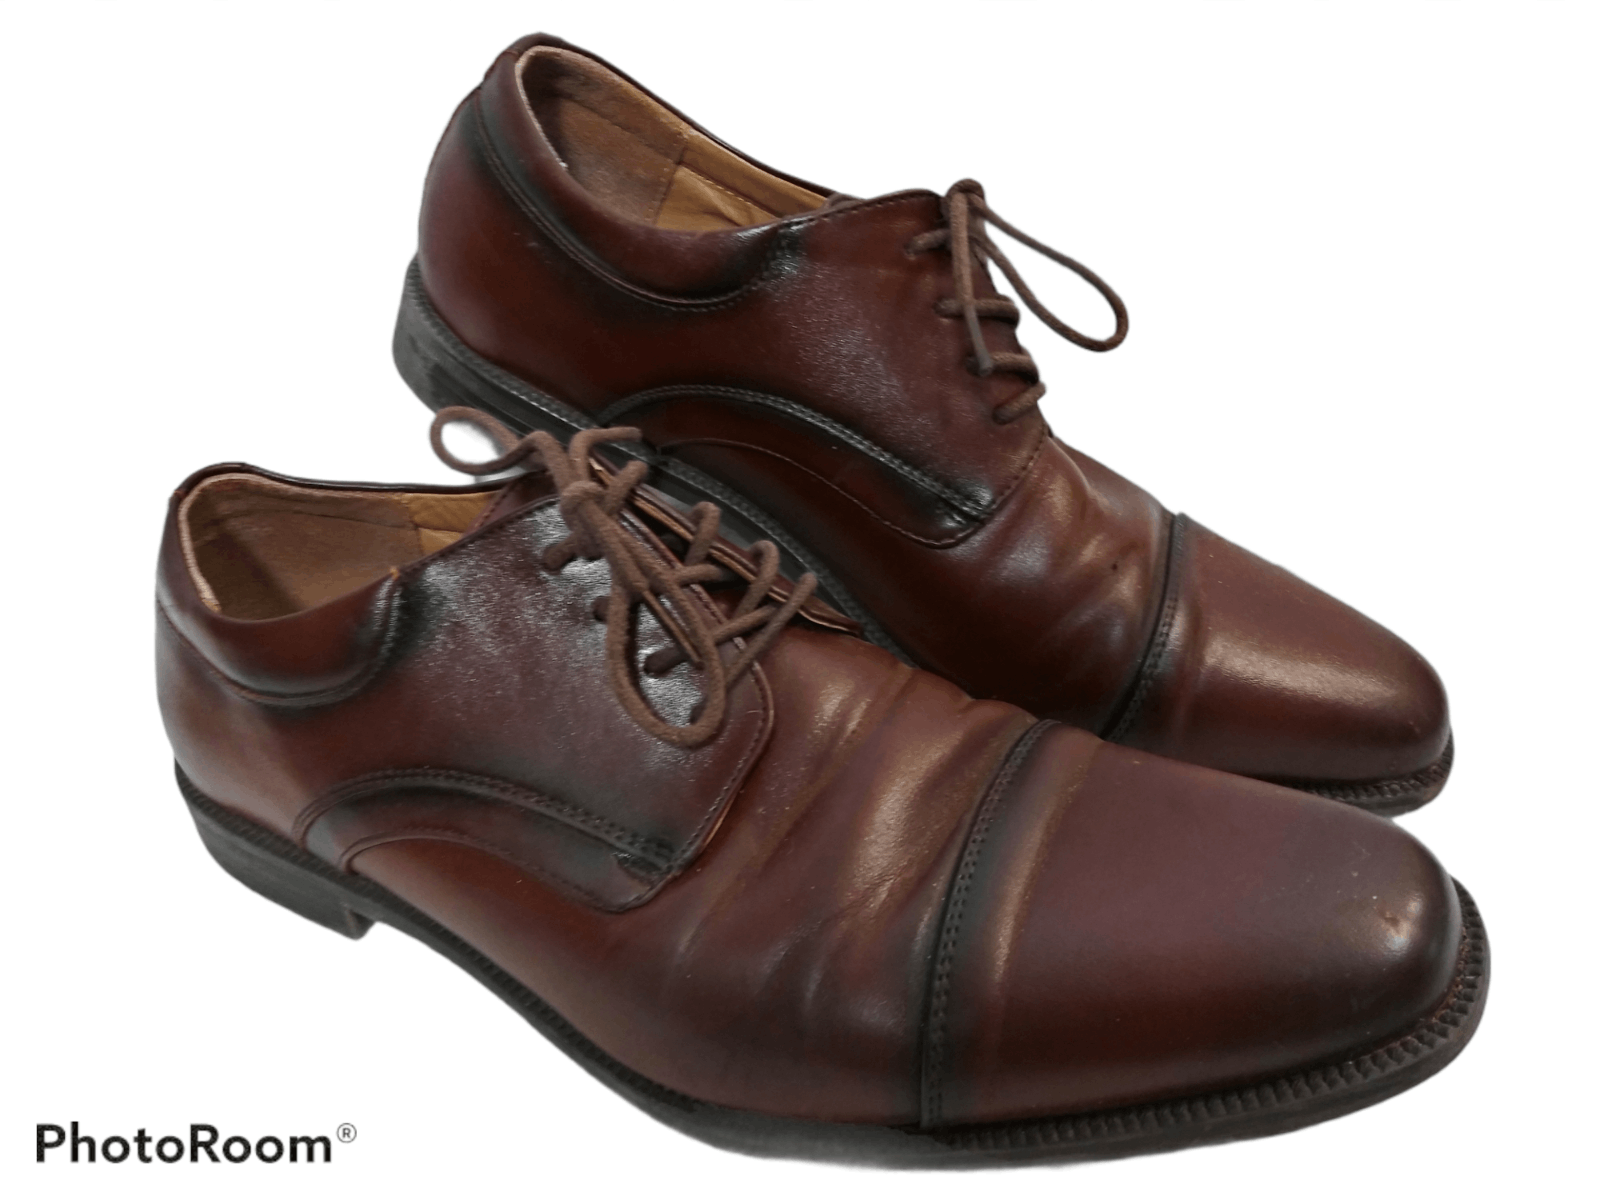 Nunn Bush Nunn Bush Men's Oxford Leather Dress Shoes Brown Size US 9 / EU 42 - 1 Preview